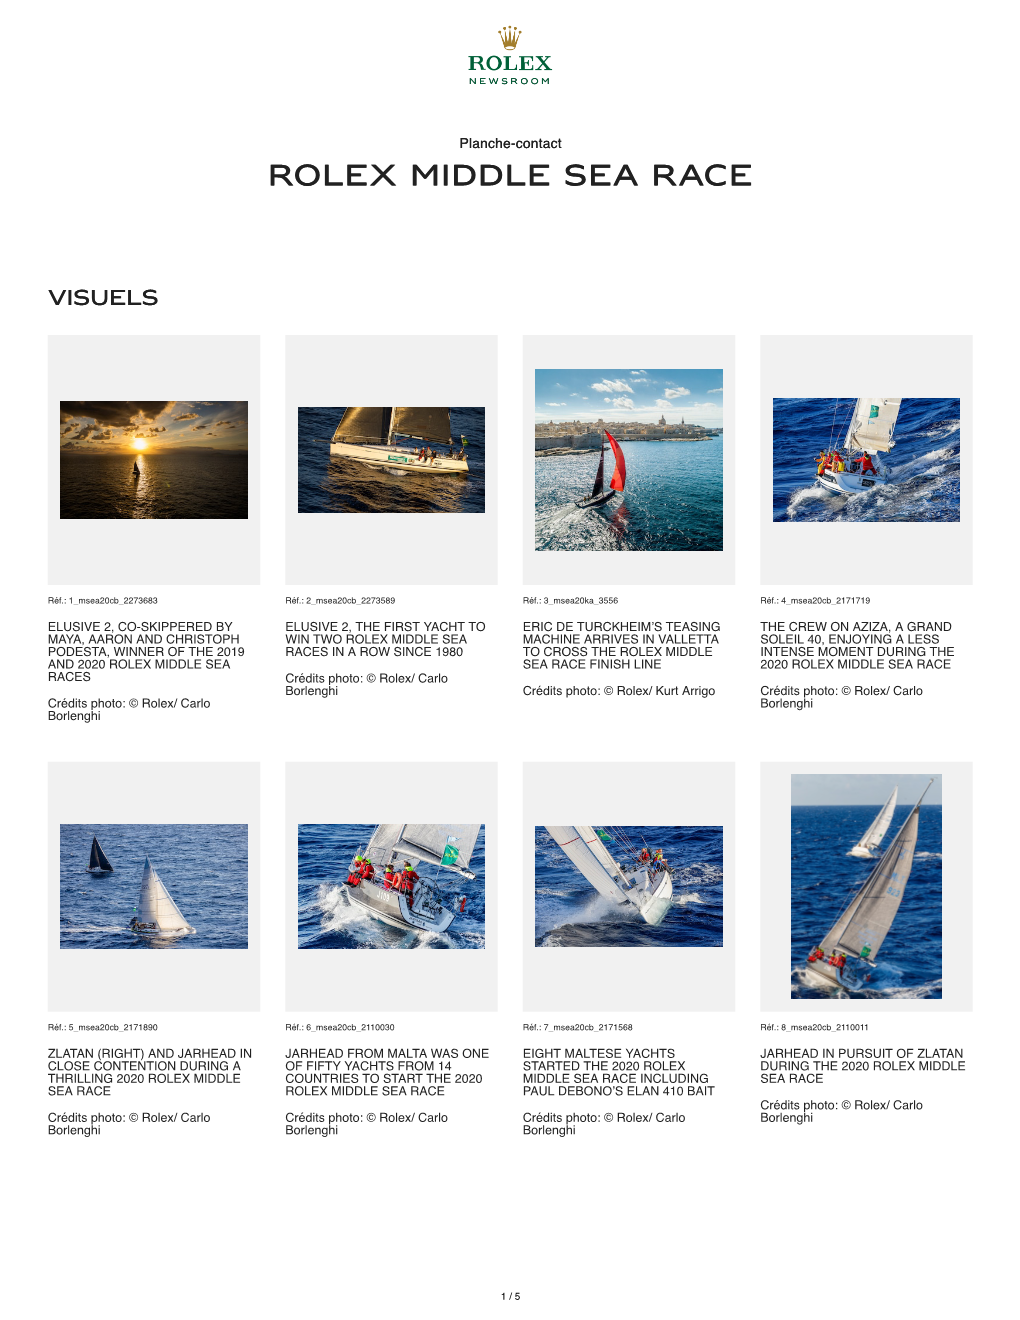 Rolex Middle Sea R Olex Middle Sea Race